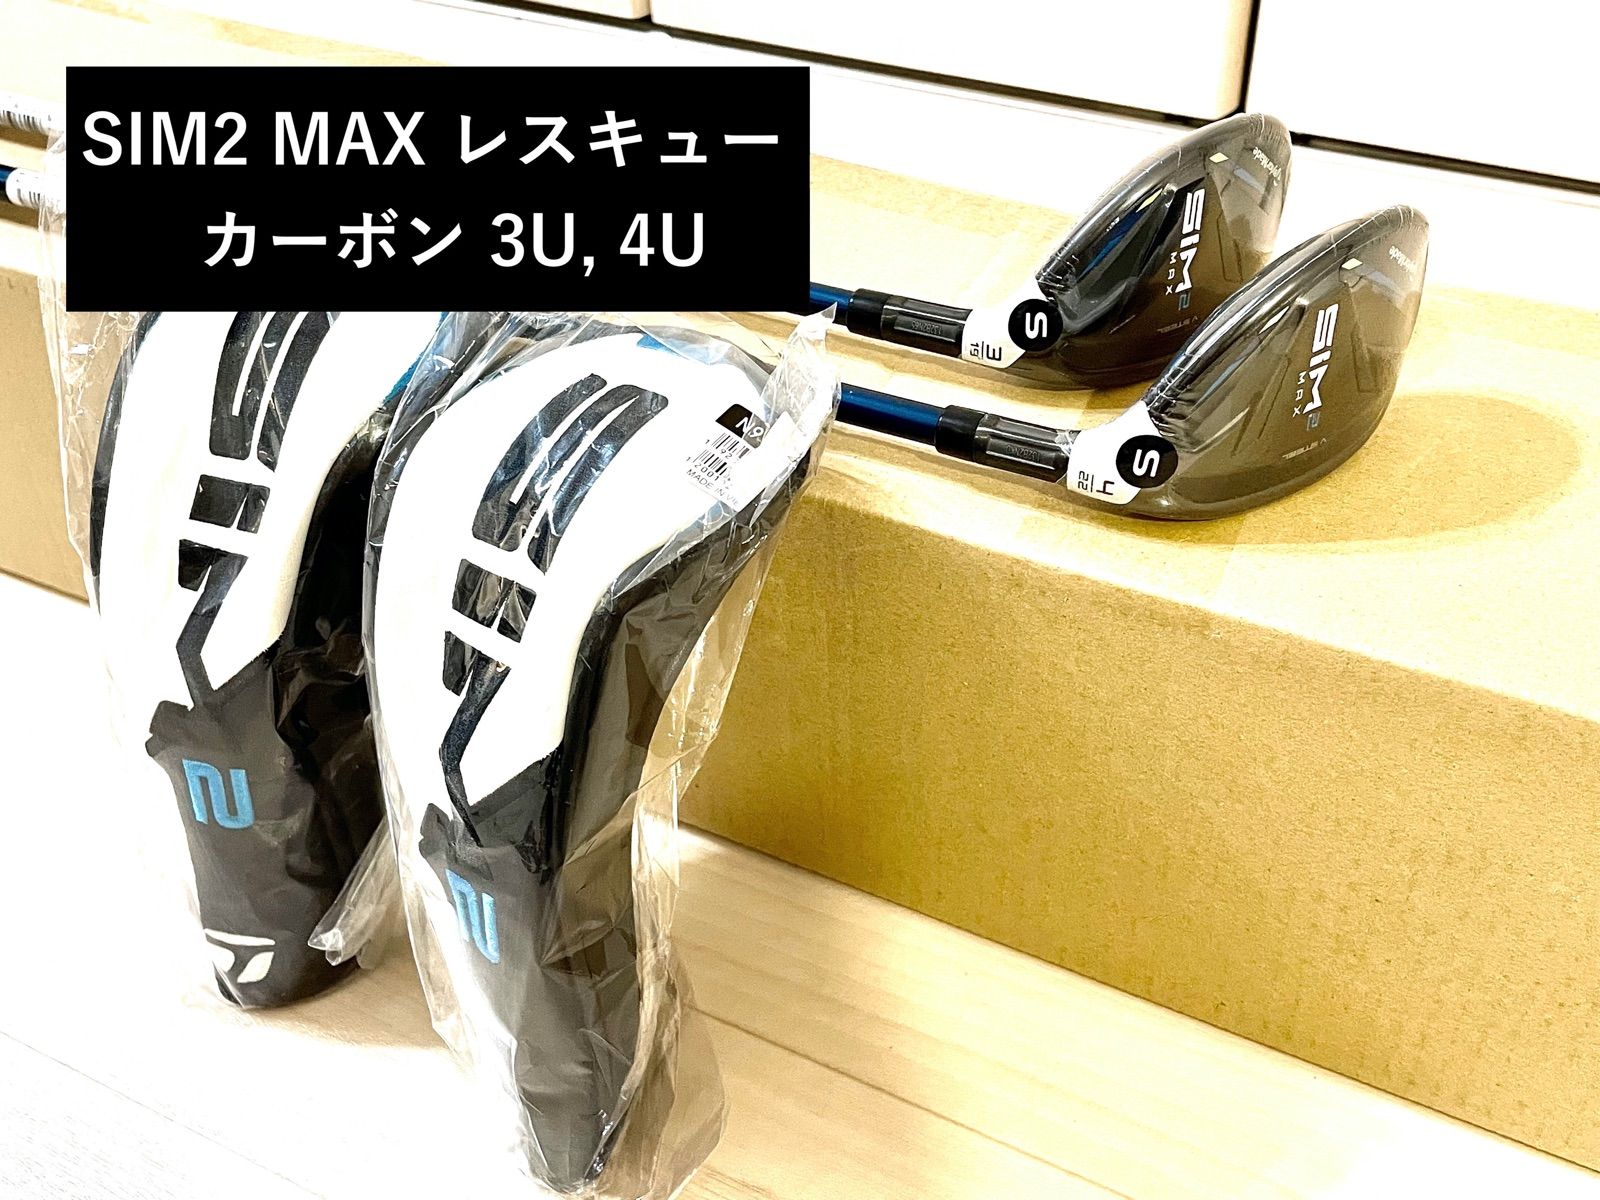 新品 SIM2 MAX レスキュー スチールシャフト 3U19 5U25 S